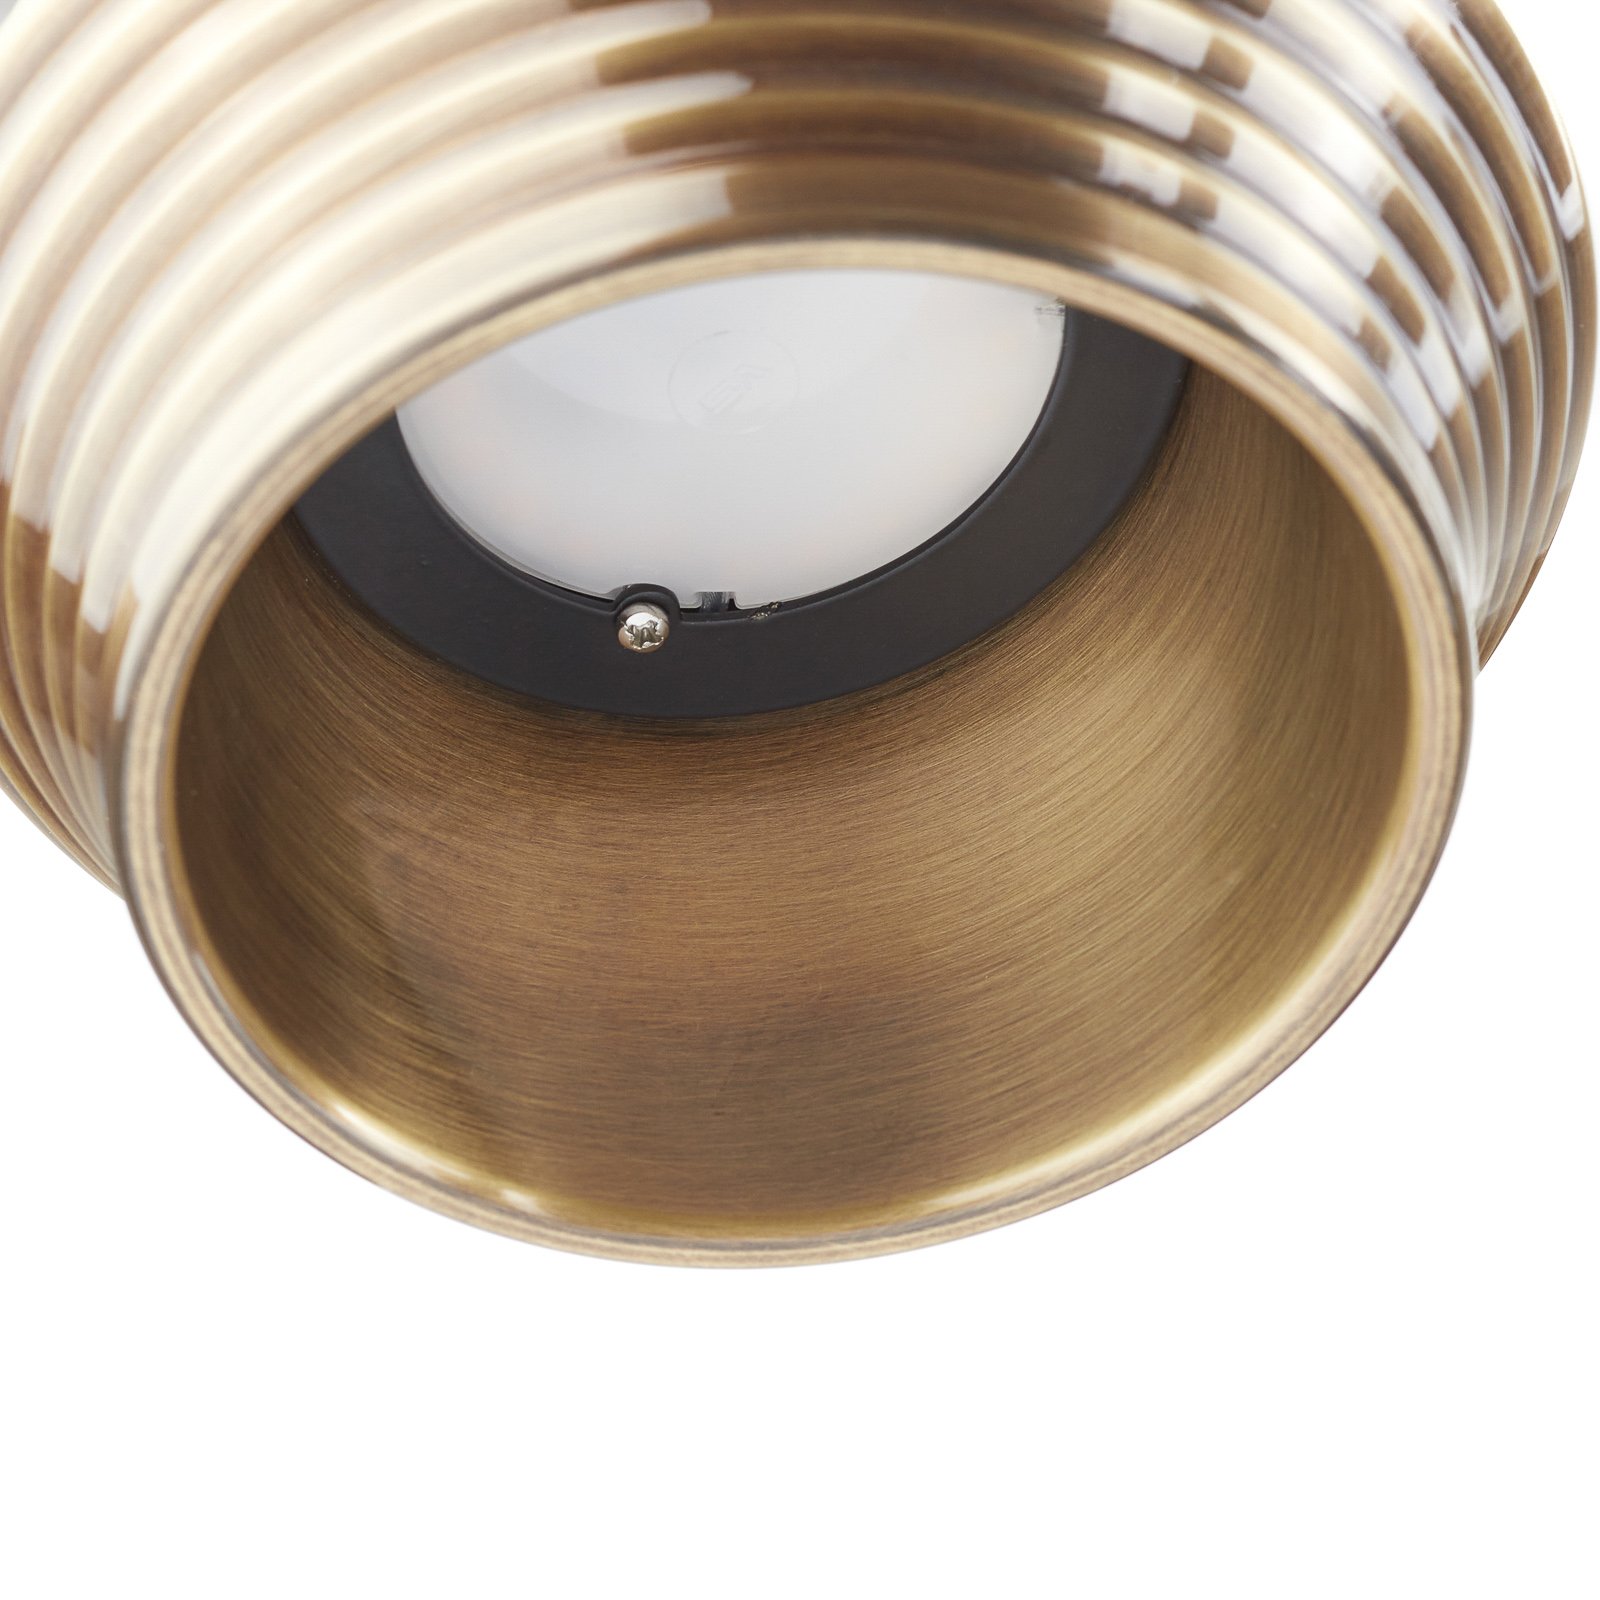 Bover Tibeta 01 - LED hanging light, antique brass